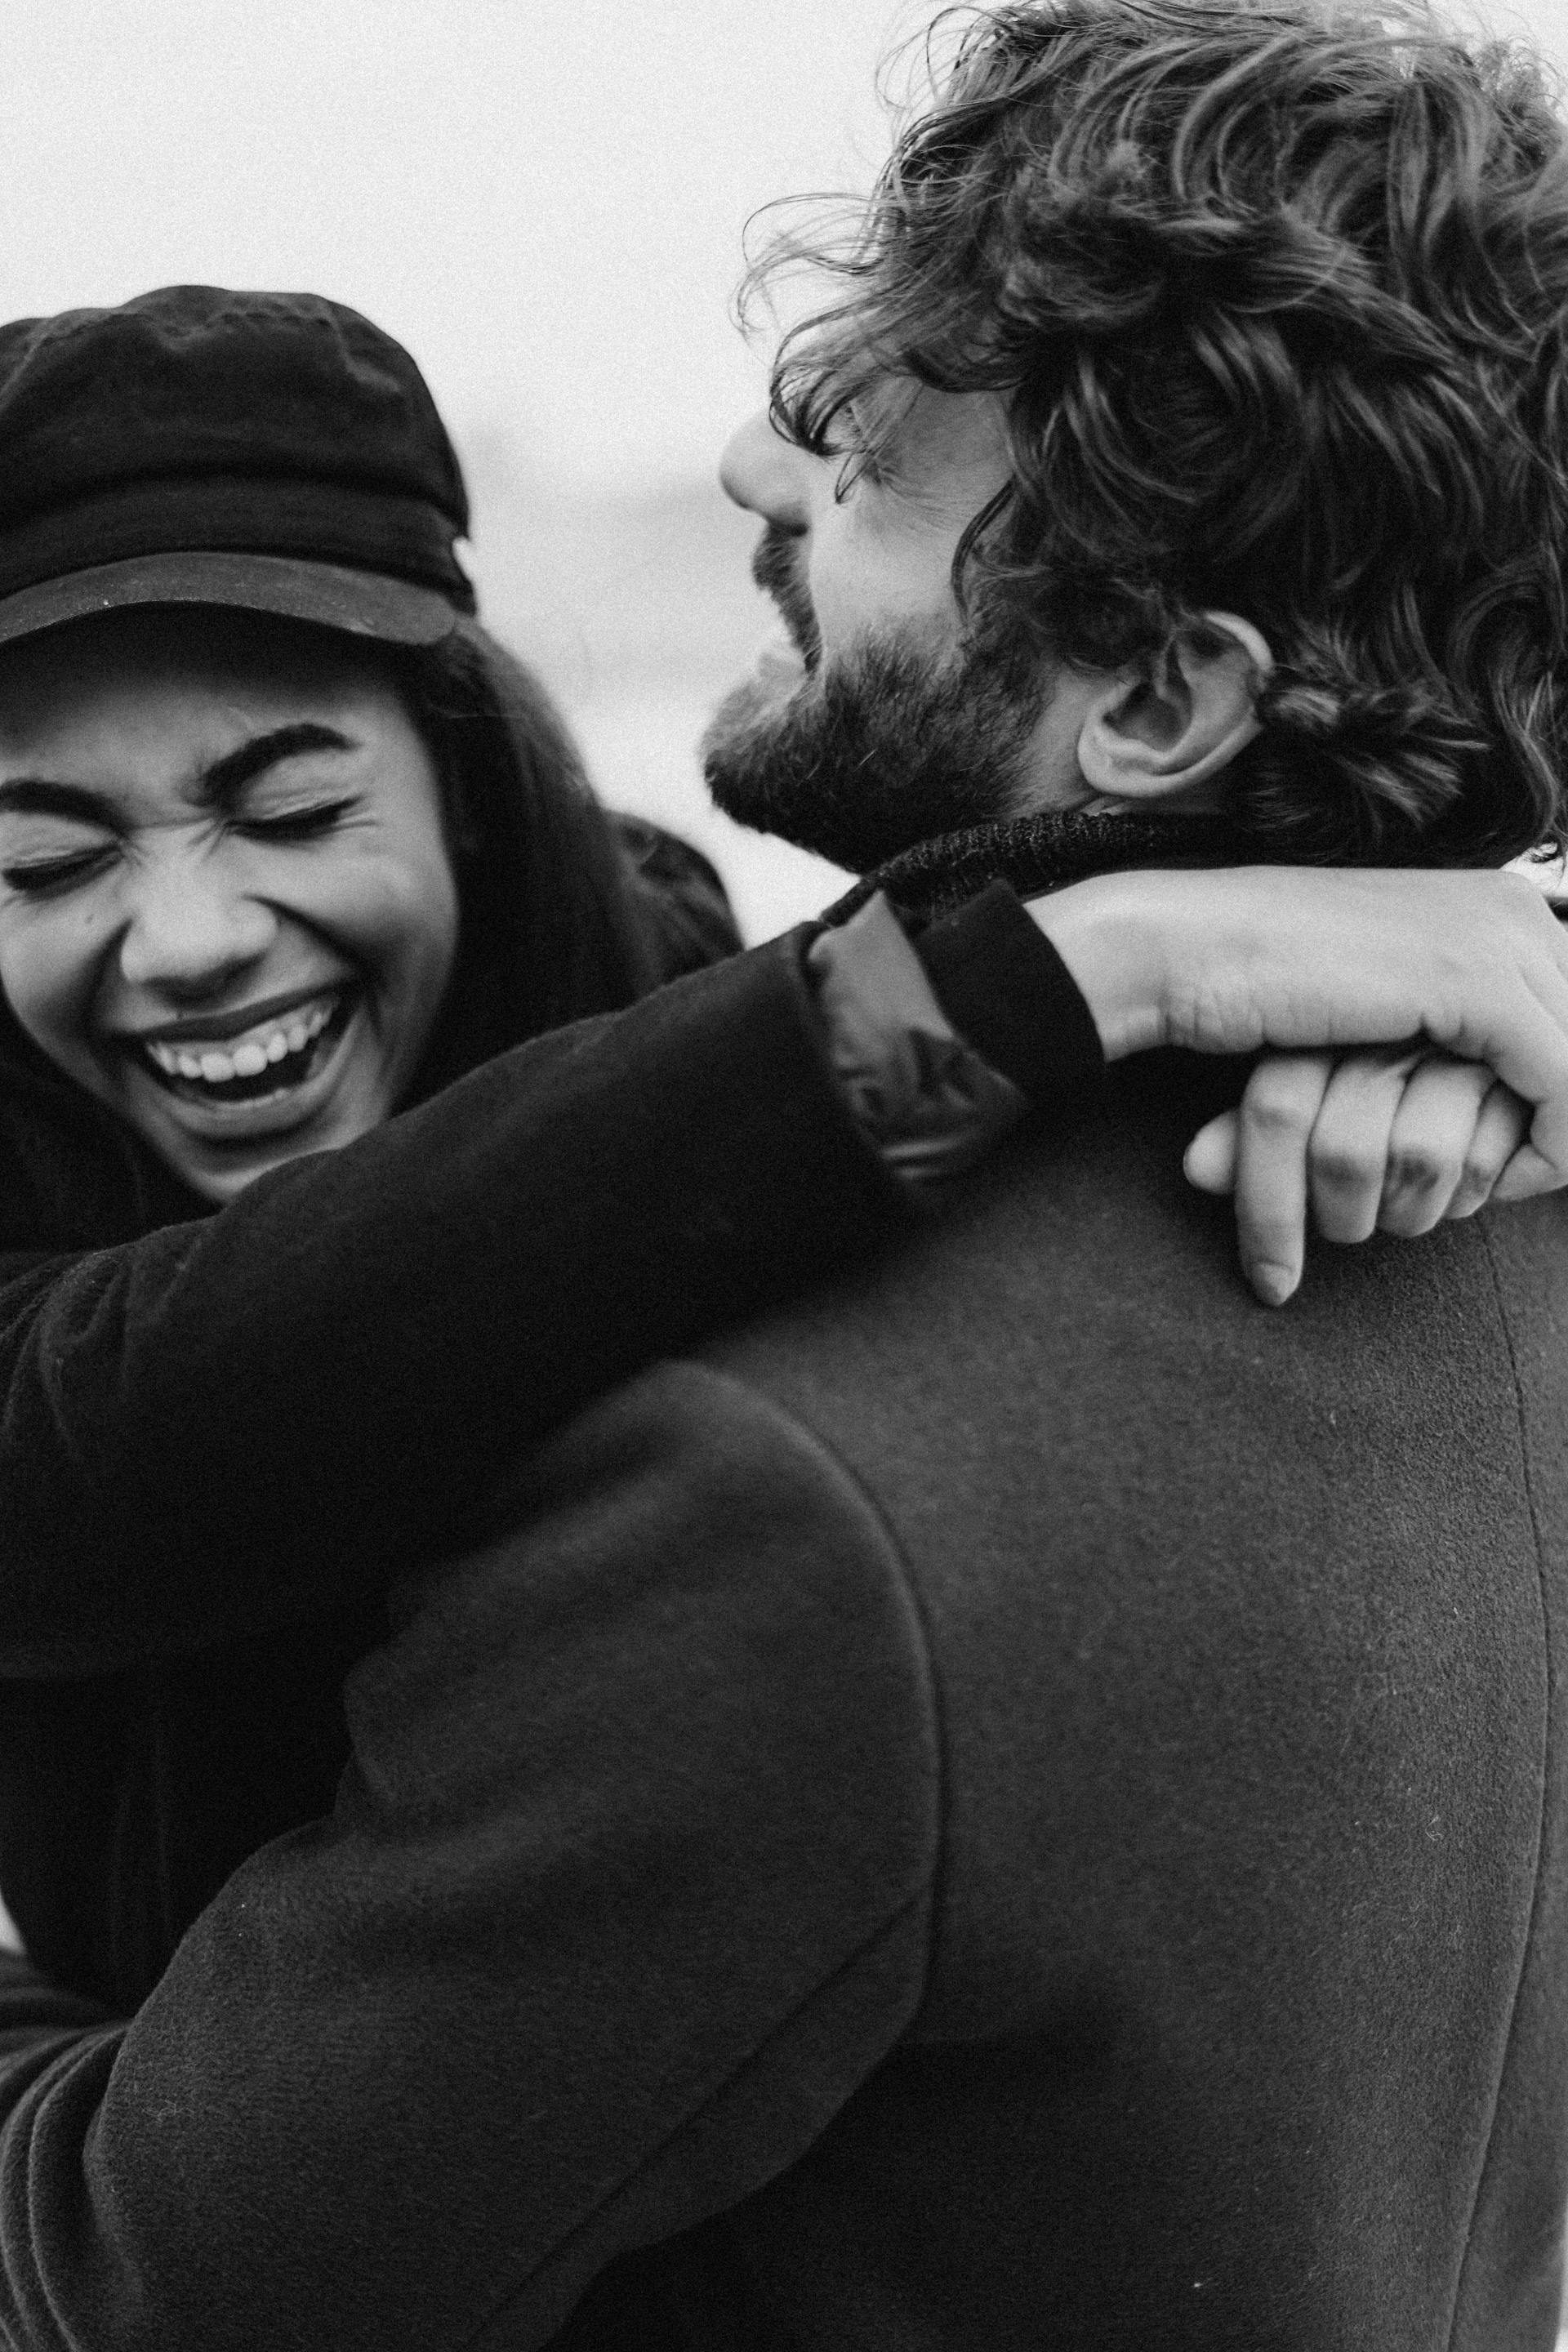 Une photo monochrome d'un couple en train de rire | Source : Pexels